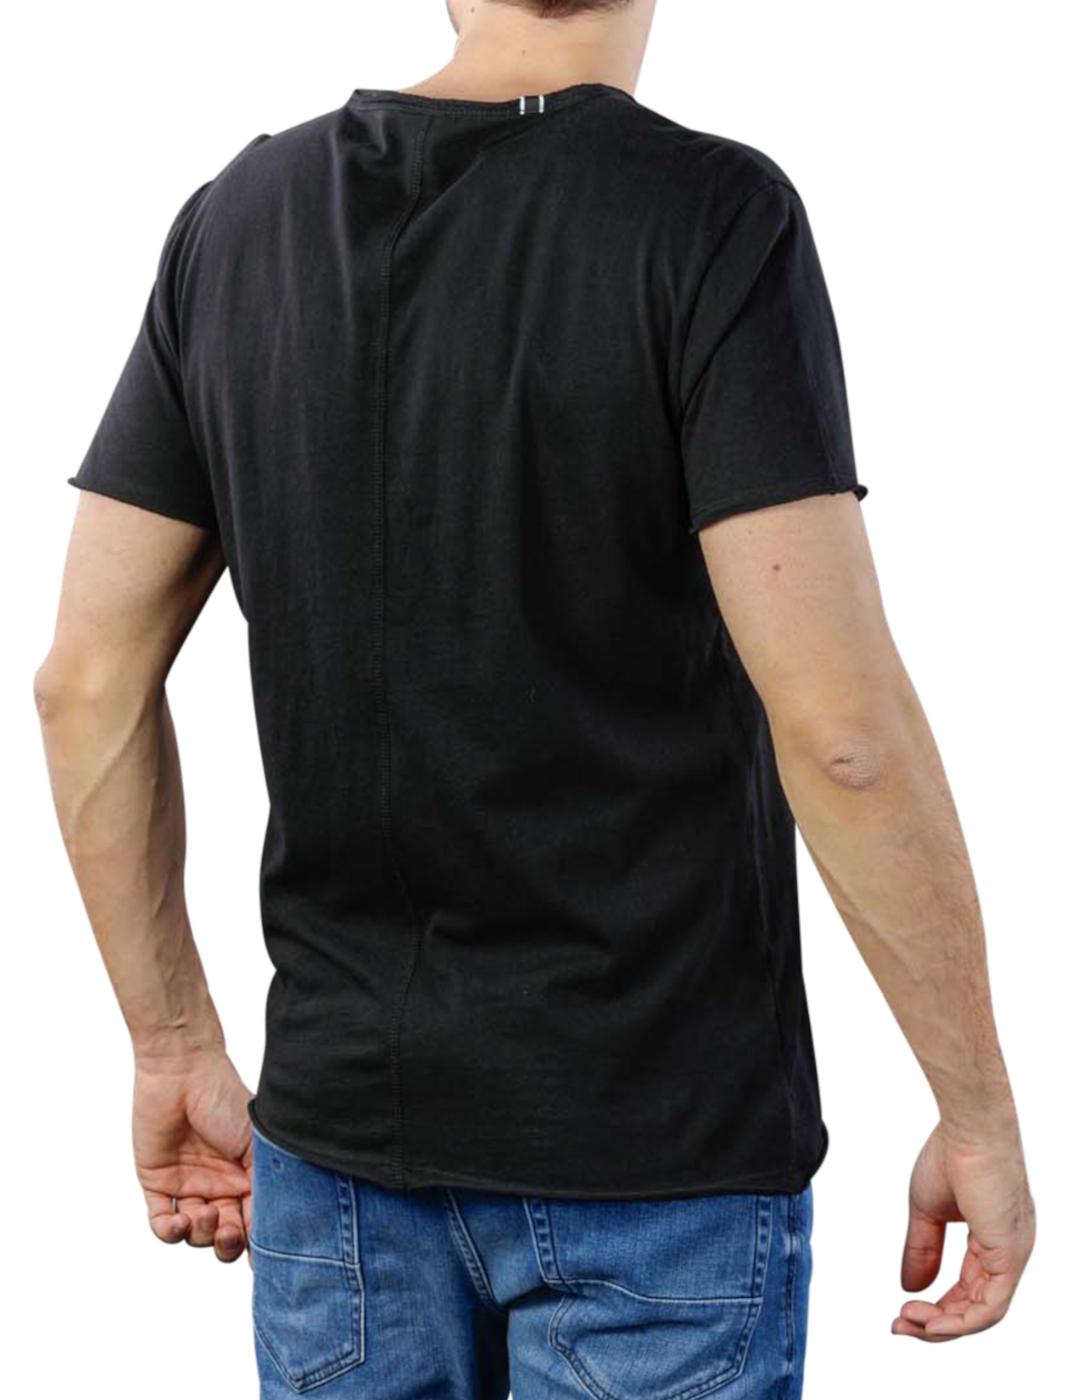 Camiseta Replay cuello en 'V' en color negro -&